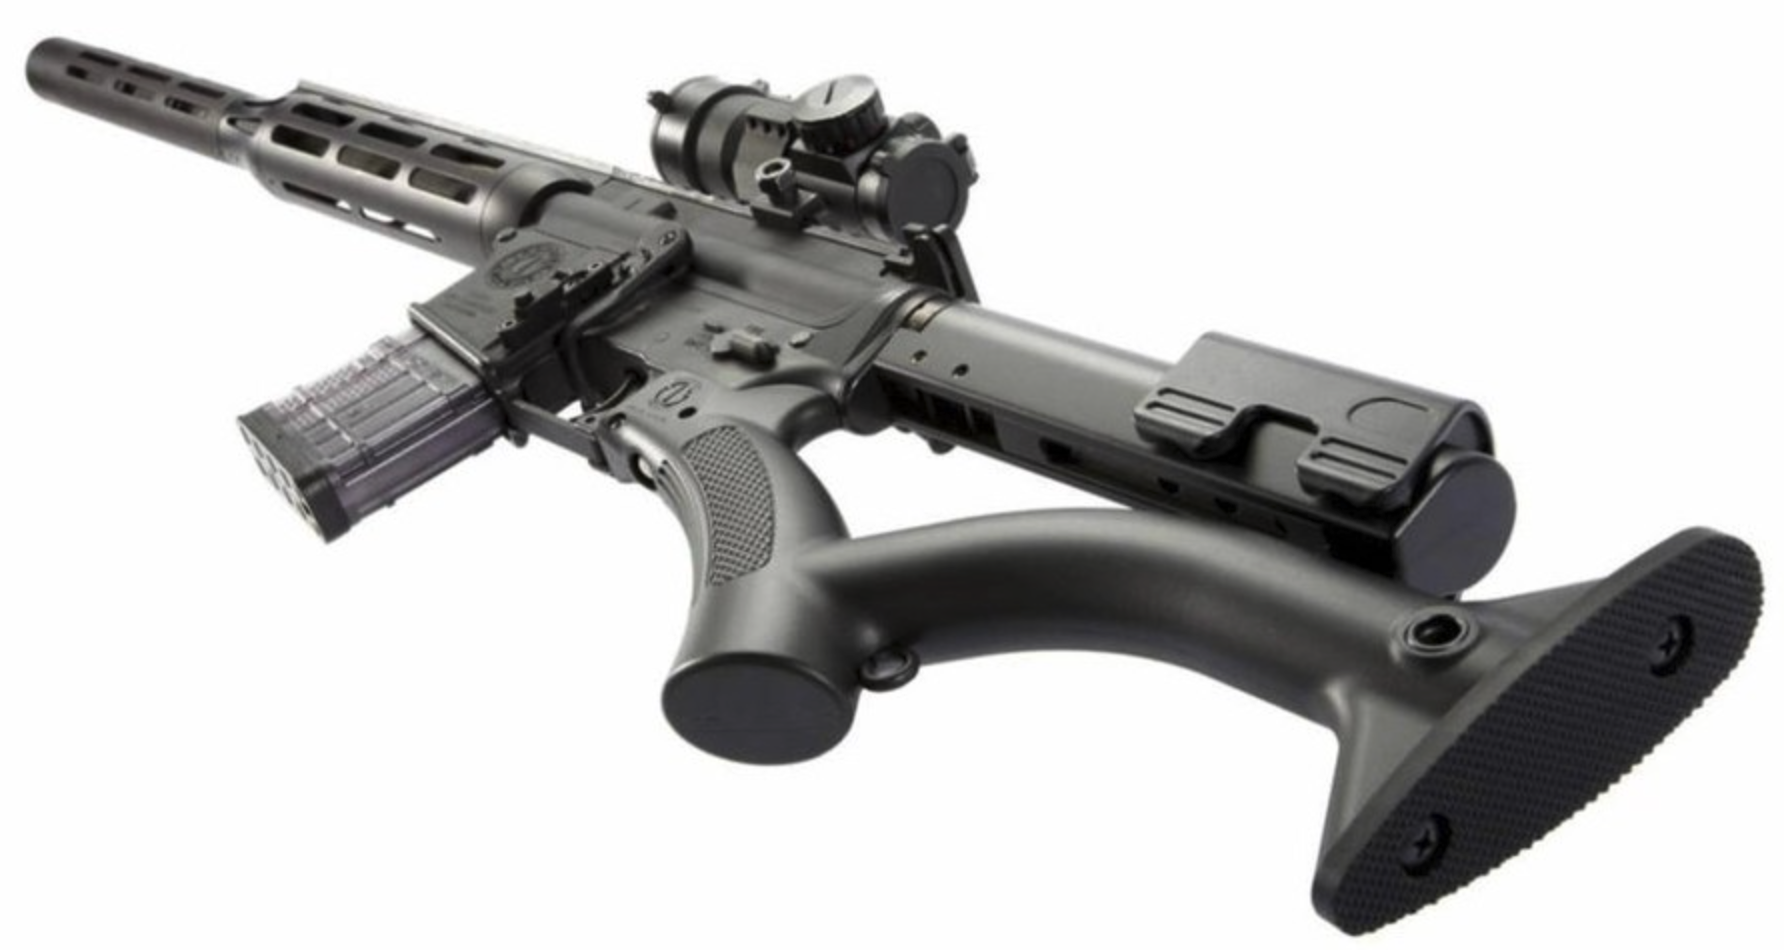 CA Compliant AR15 rifle